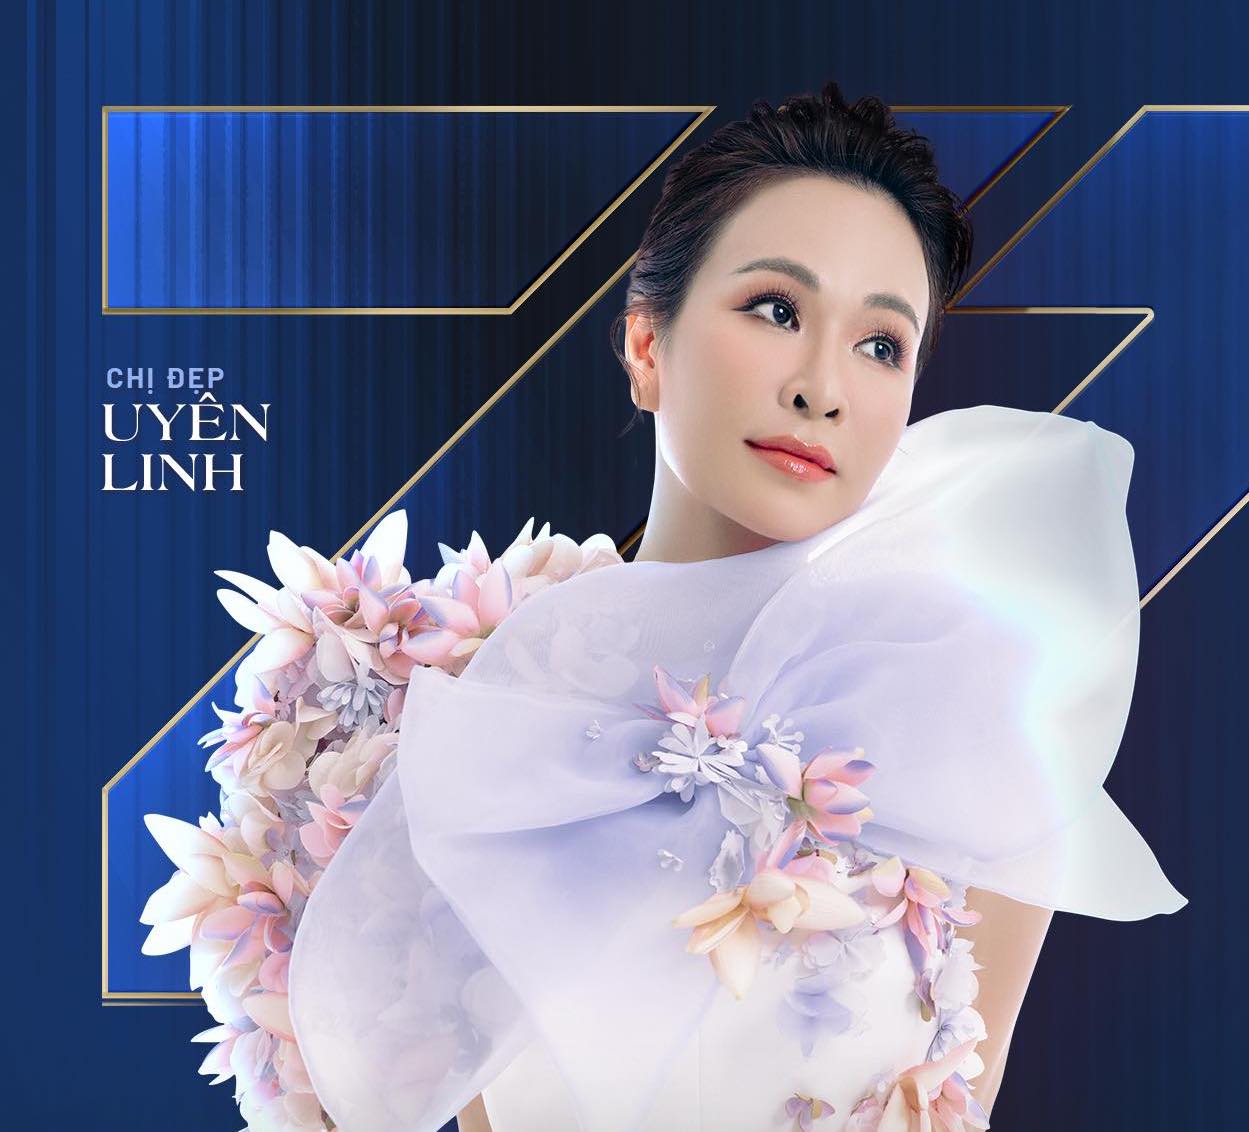 13 năm từ 'Vietnam Idol' đến 'Chị đẹp đạp gió rẽ sóng', Uyên Linh thay đổi khó nhận ra - Ảnh 2.